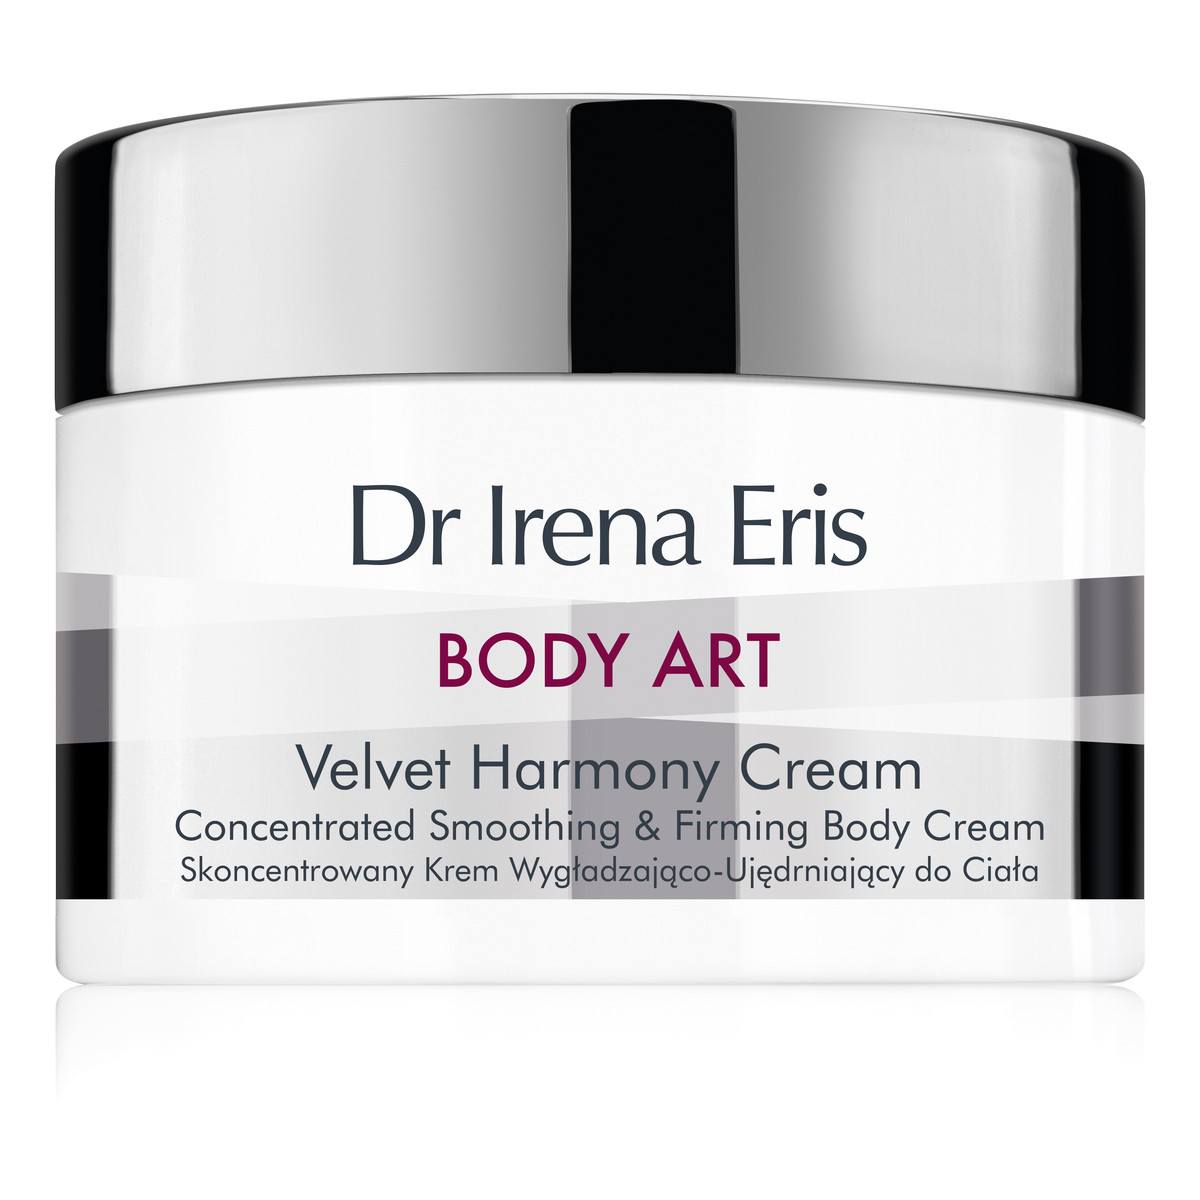 Dr Irena Eris Body Art Velvet Harmony SKONCENTROWANY KREM WYGŁADZAJĄCO-UJĘDRNIAJĄCY DO CIAŁA 200ml